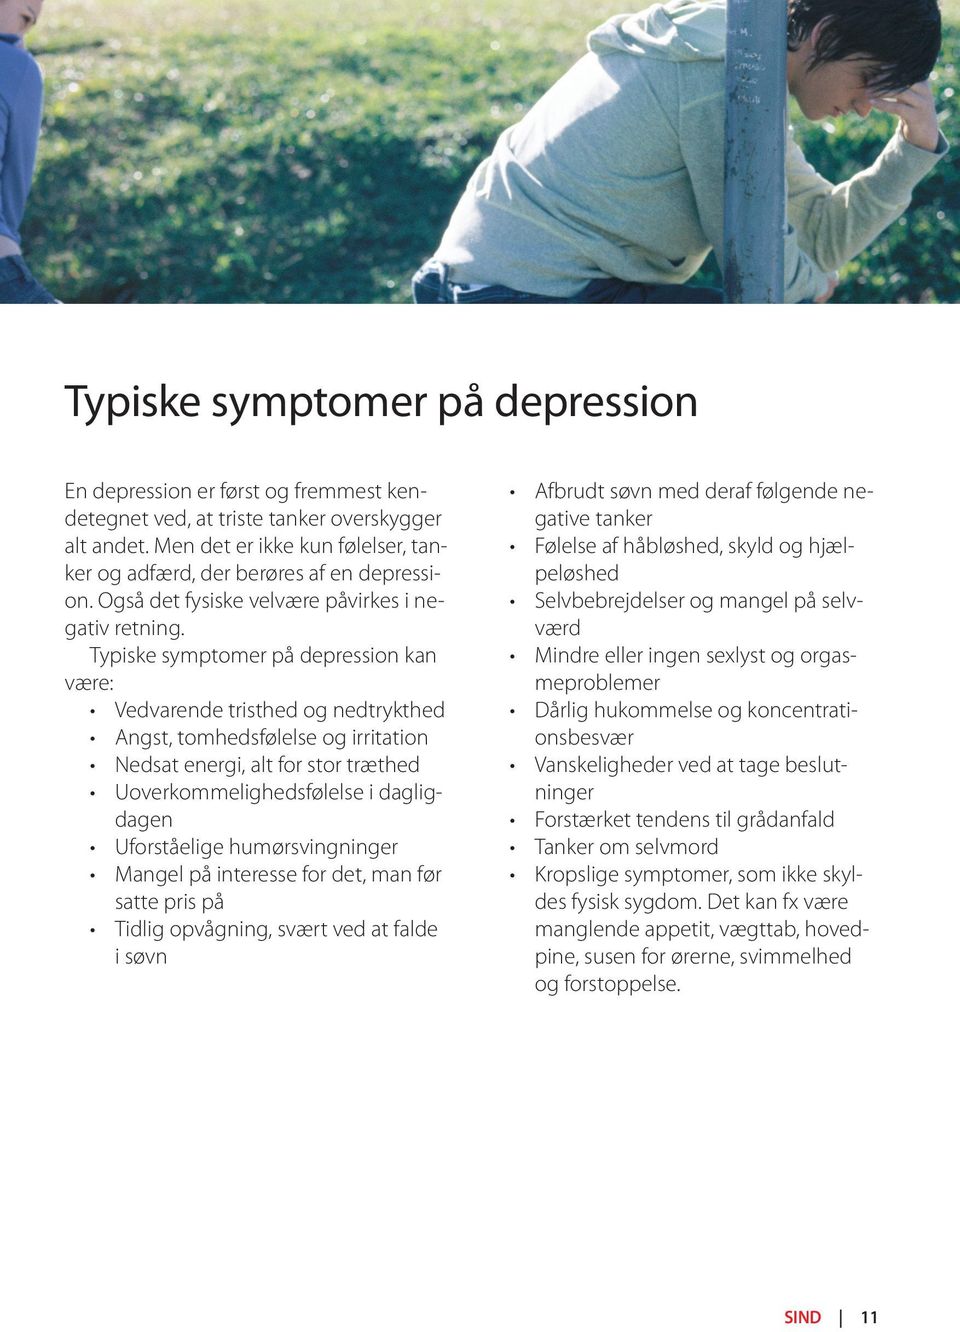 Typiske symptomer på depression kan være: Vedvarende tristhed og nedtrykthed Angst, tomhedsfølelse og irritation Nedsat energi, alt for stor træthed Uoverkommelighedsfølelse i dagligdagen